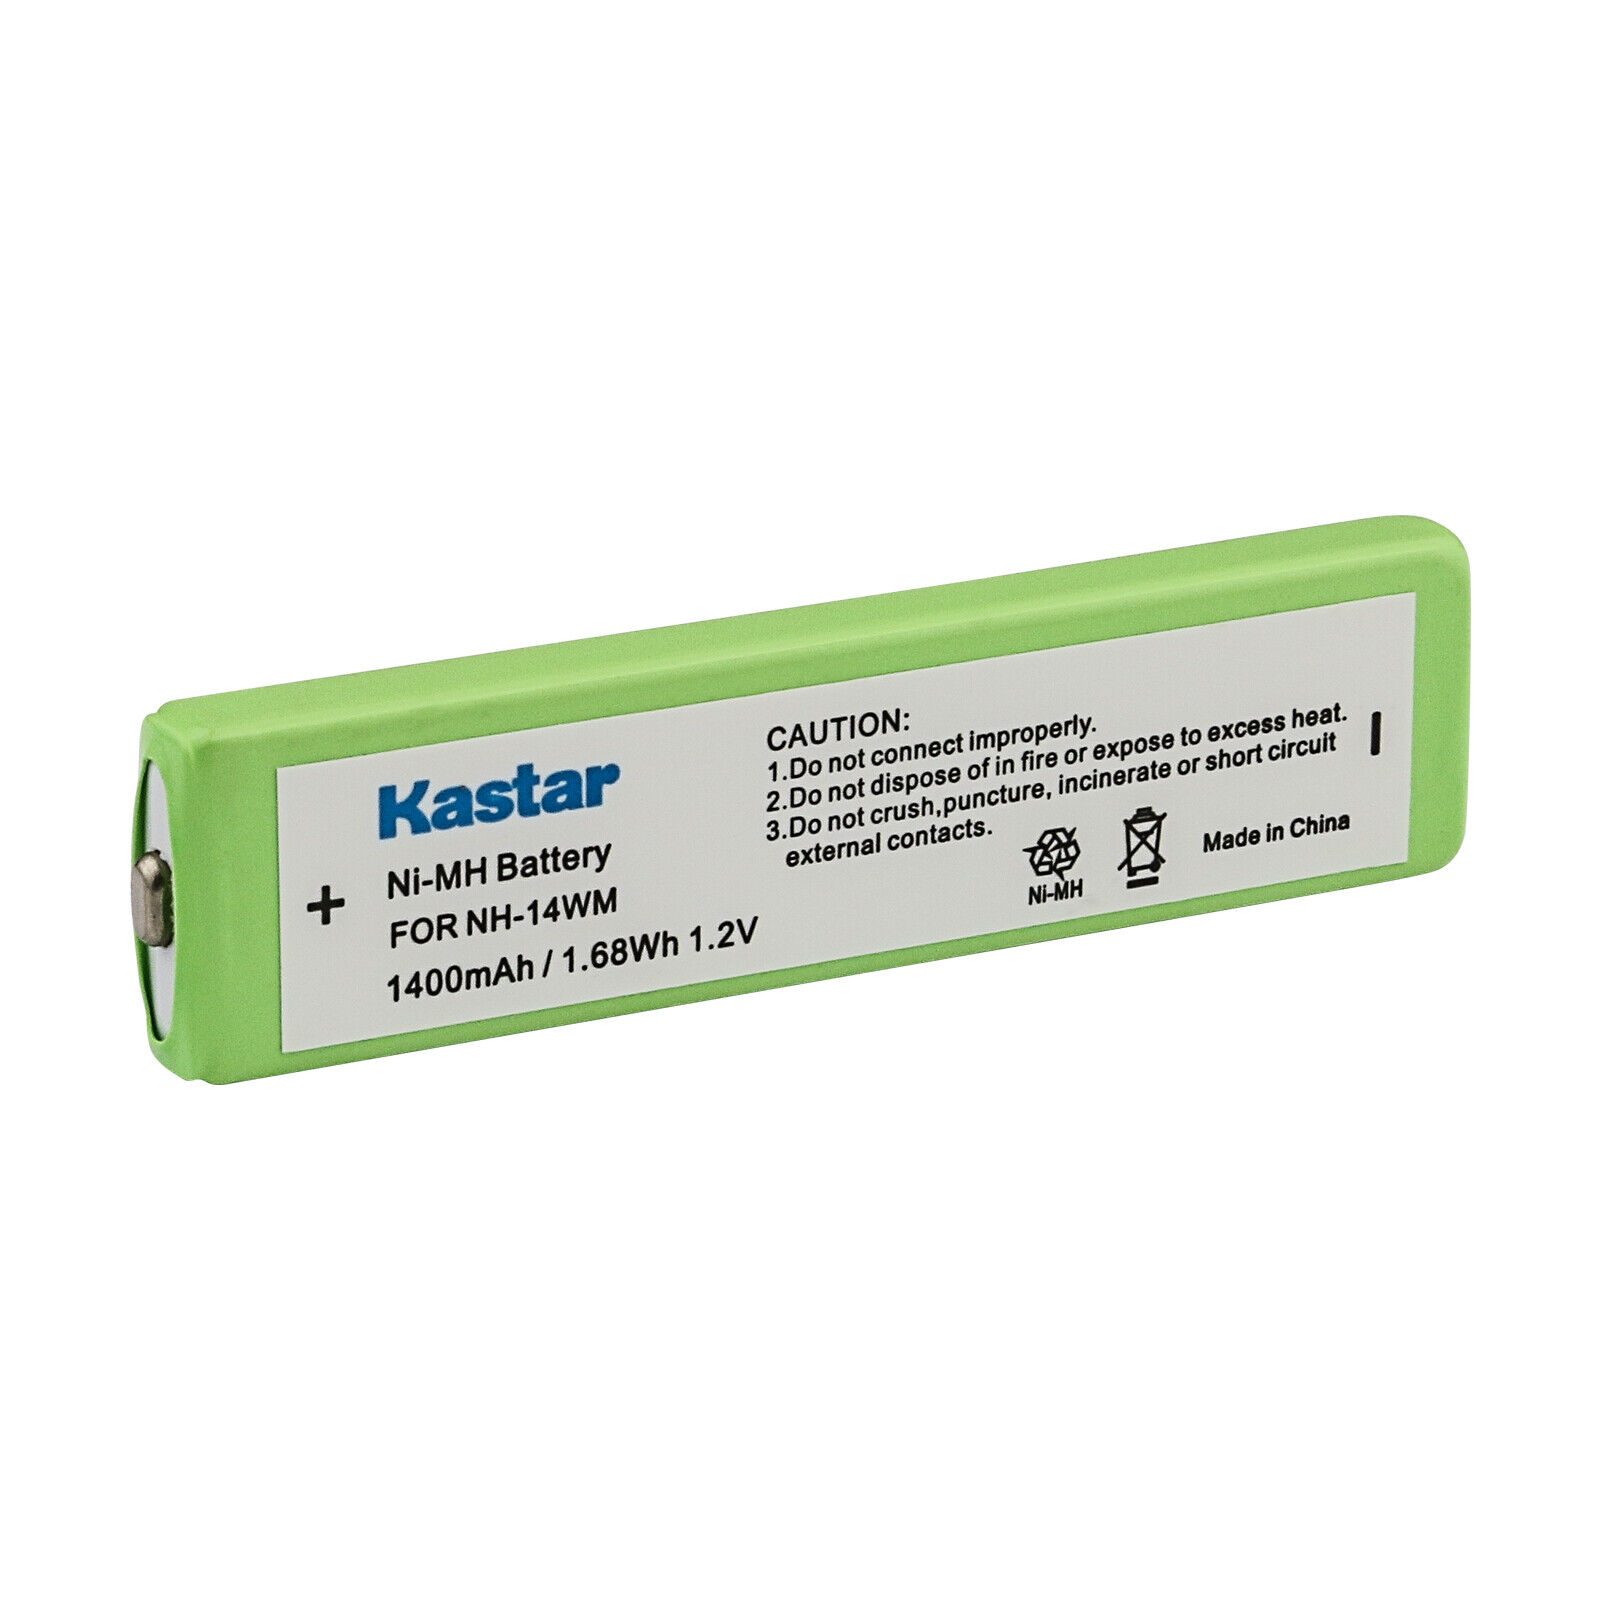 Kastar Gumstick Battery for Sony NH-14WM, NH14WM, NH-14WM(A) WM-EX921 WM-609